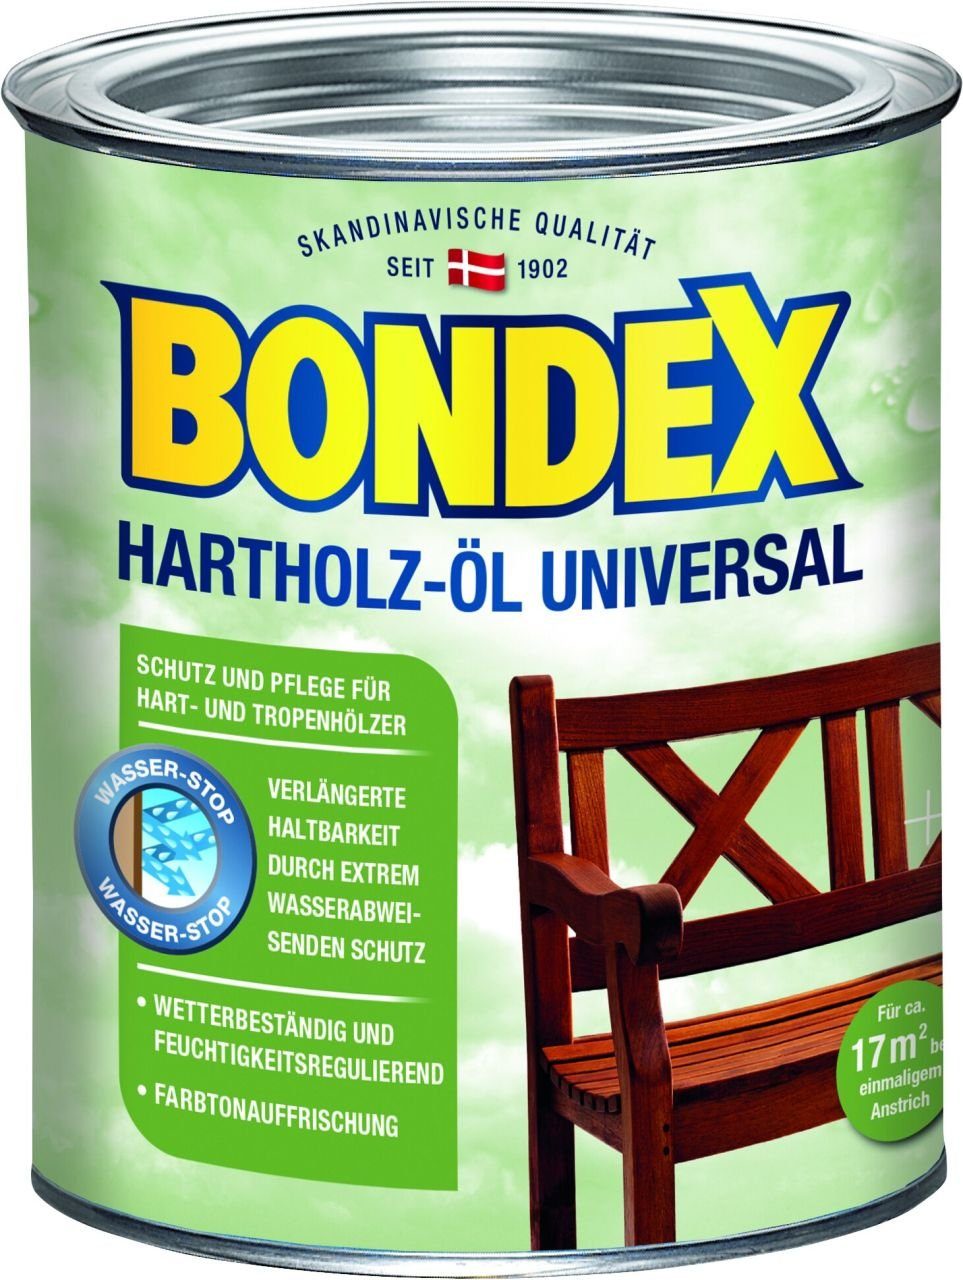 Bondex Hartholzöl Bondex Hartholz-Öl Universal 750 ml meranti